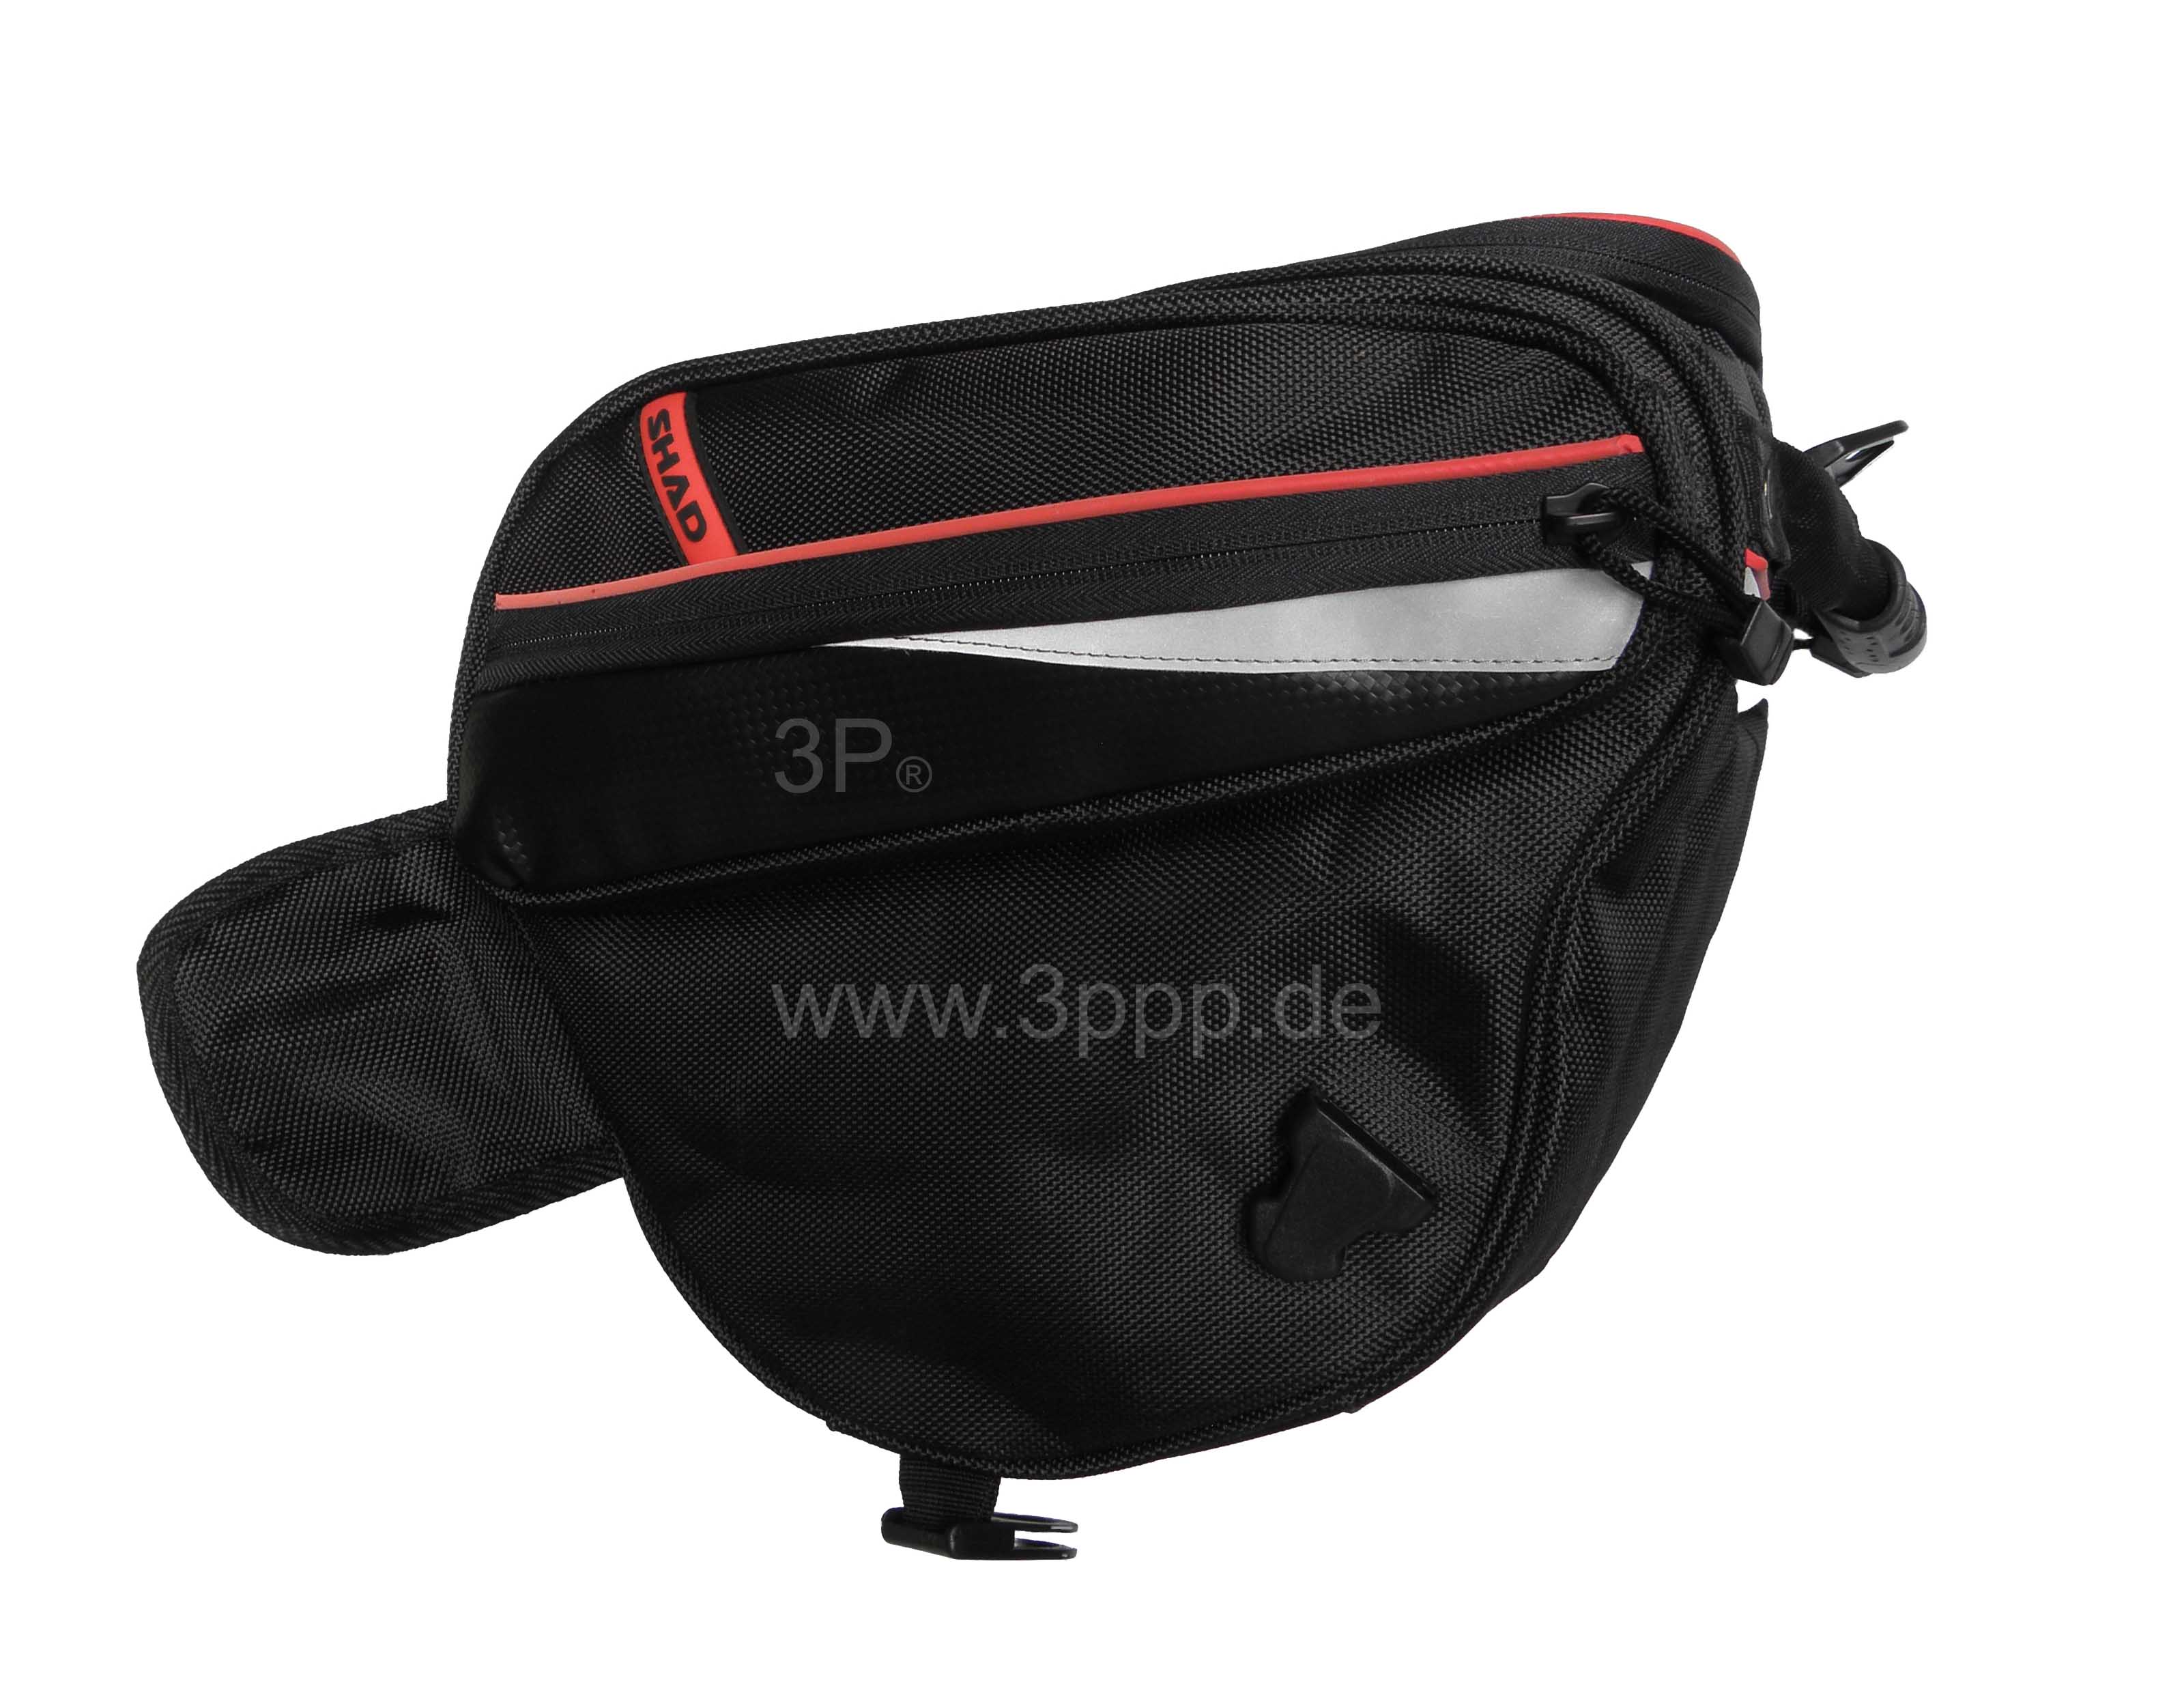 Piaggio MP3 Scooter Bag